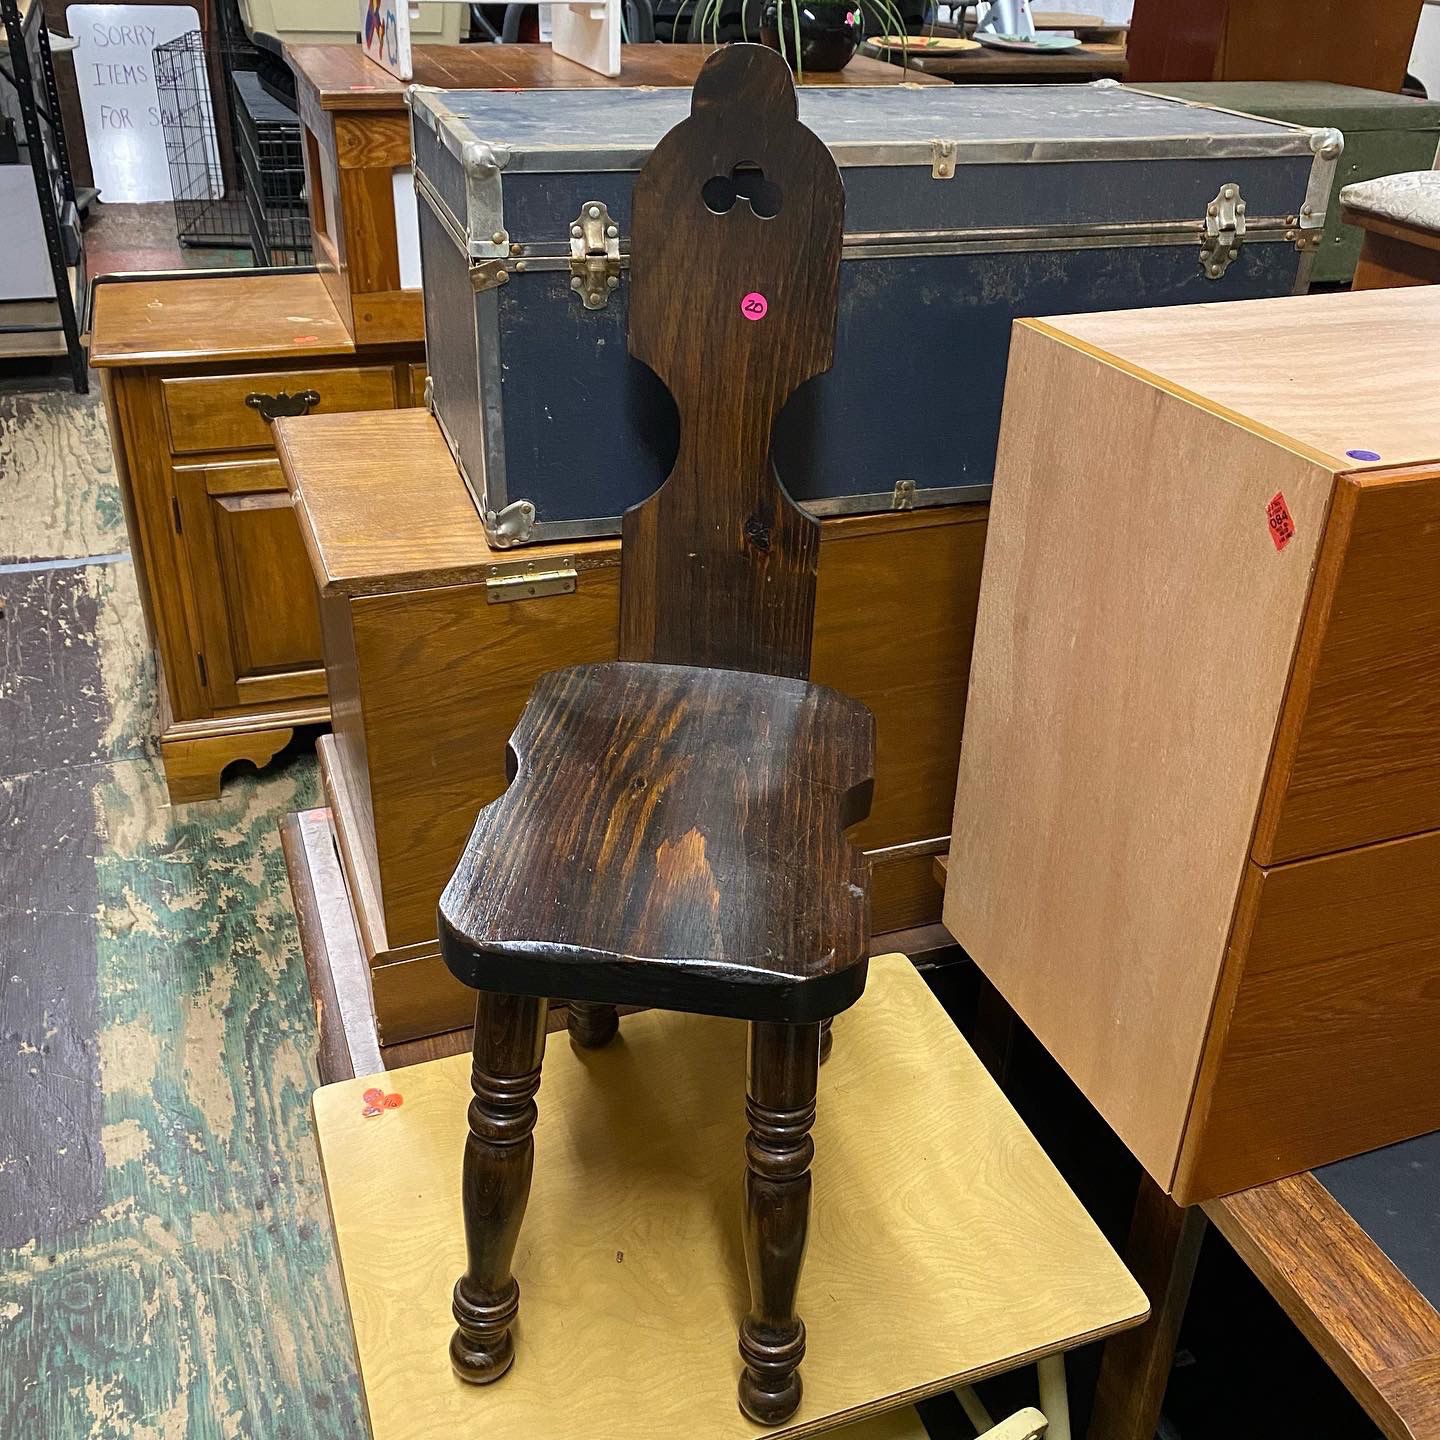 Vintage Wooden Children’s Chair in Dark Finish. $20. 